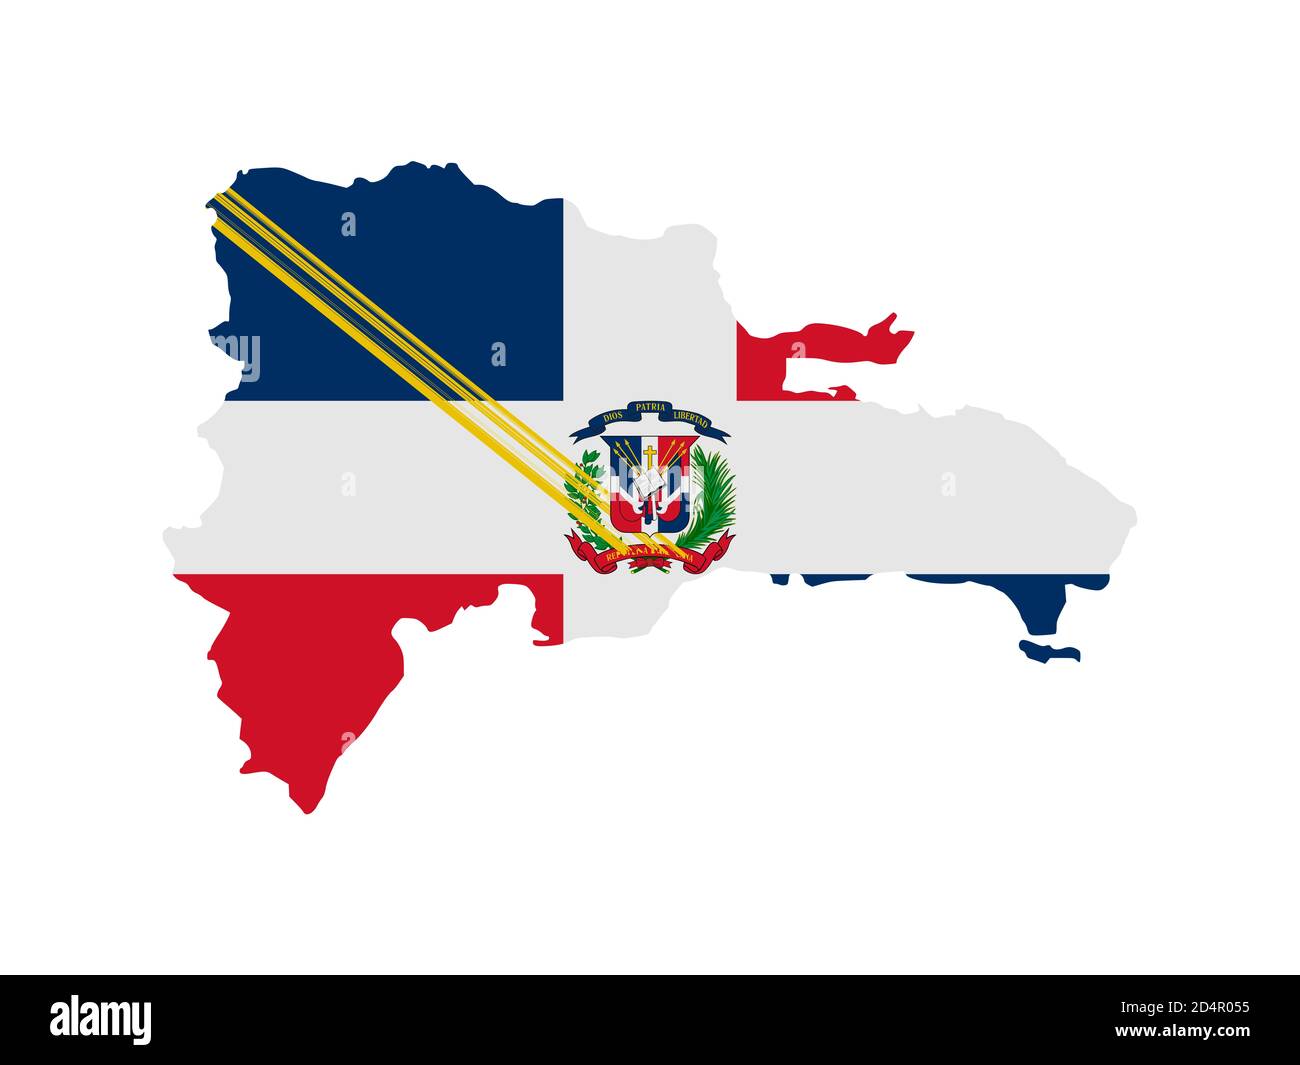 Flagge in Form des geographischen Landes, Dominikanische Republik, Lateinamerika und Karibik, Karibik, Nord- und Südamerika, Mittelamerika Stockfoto